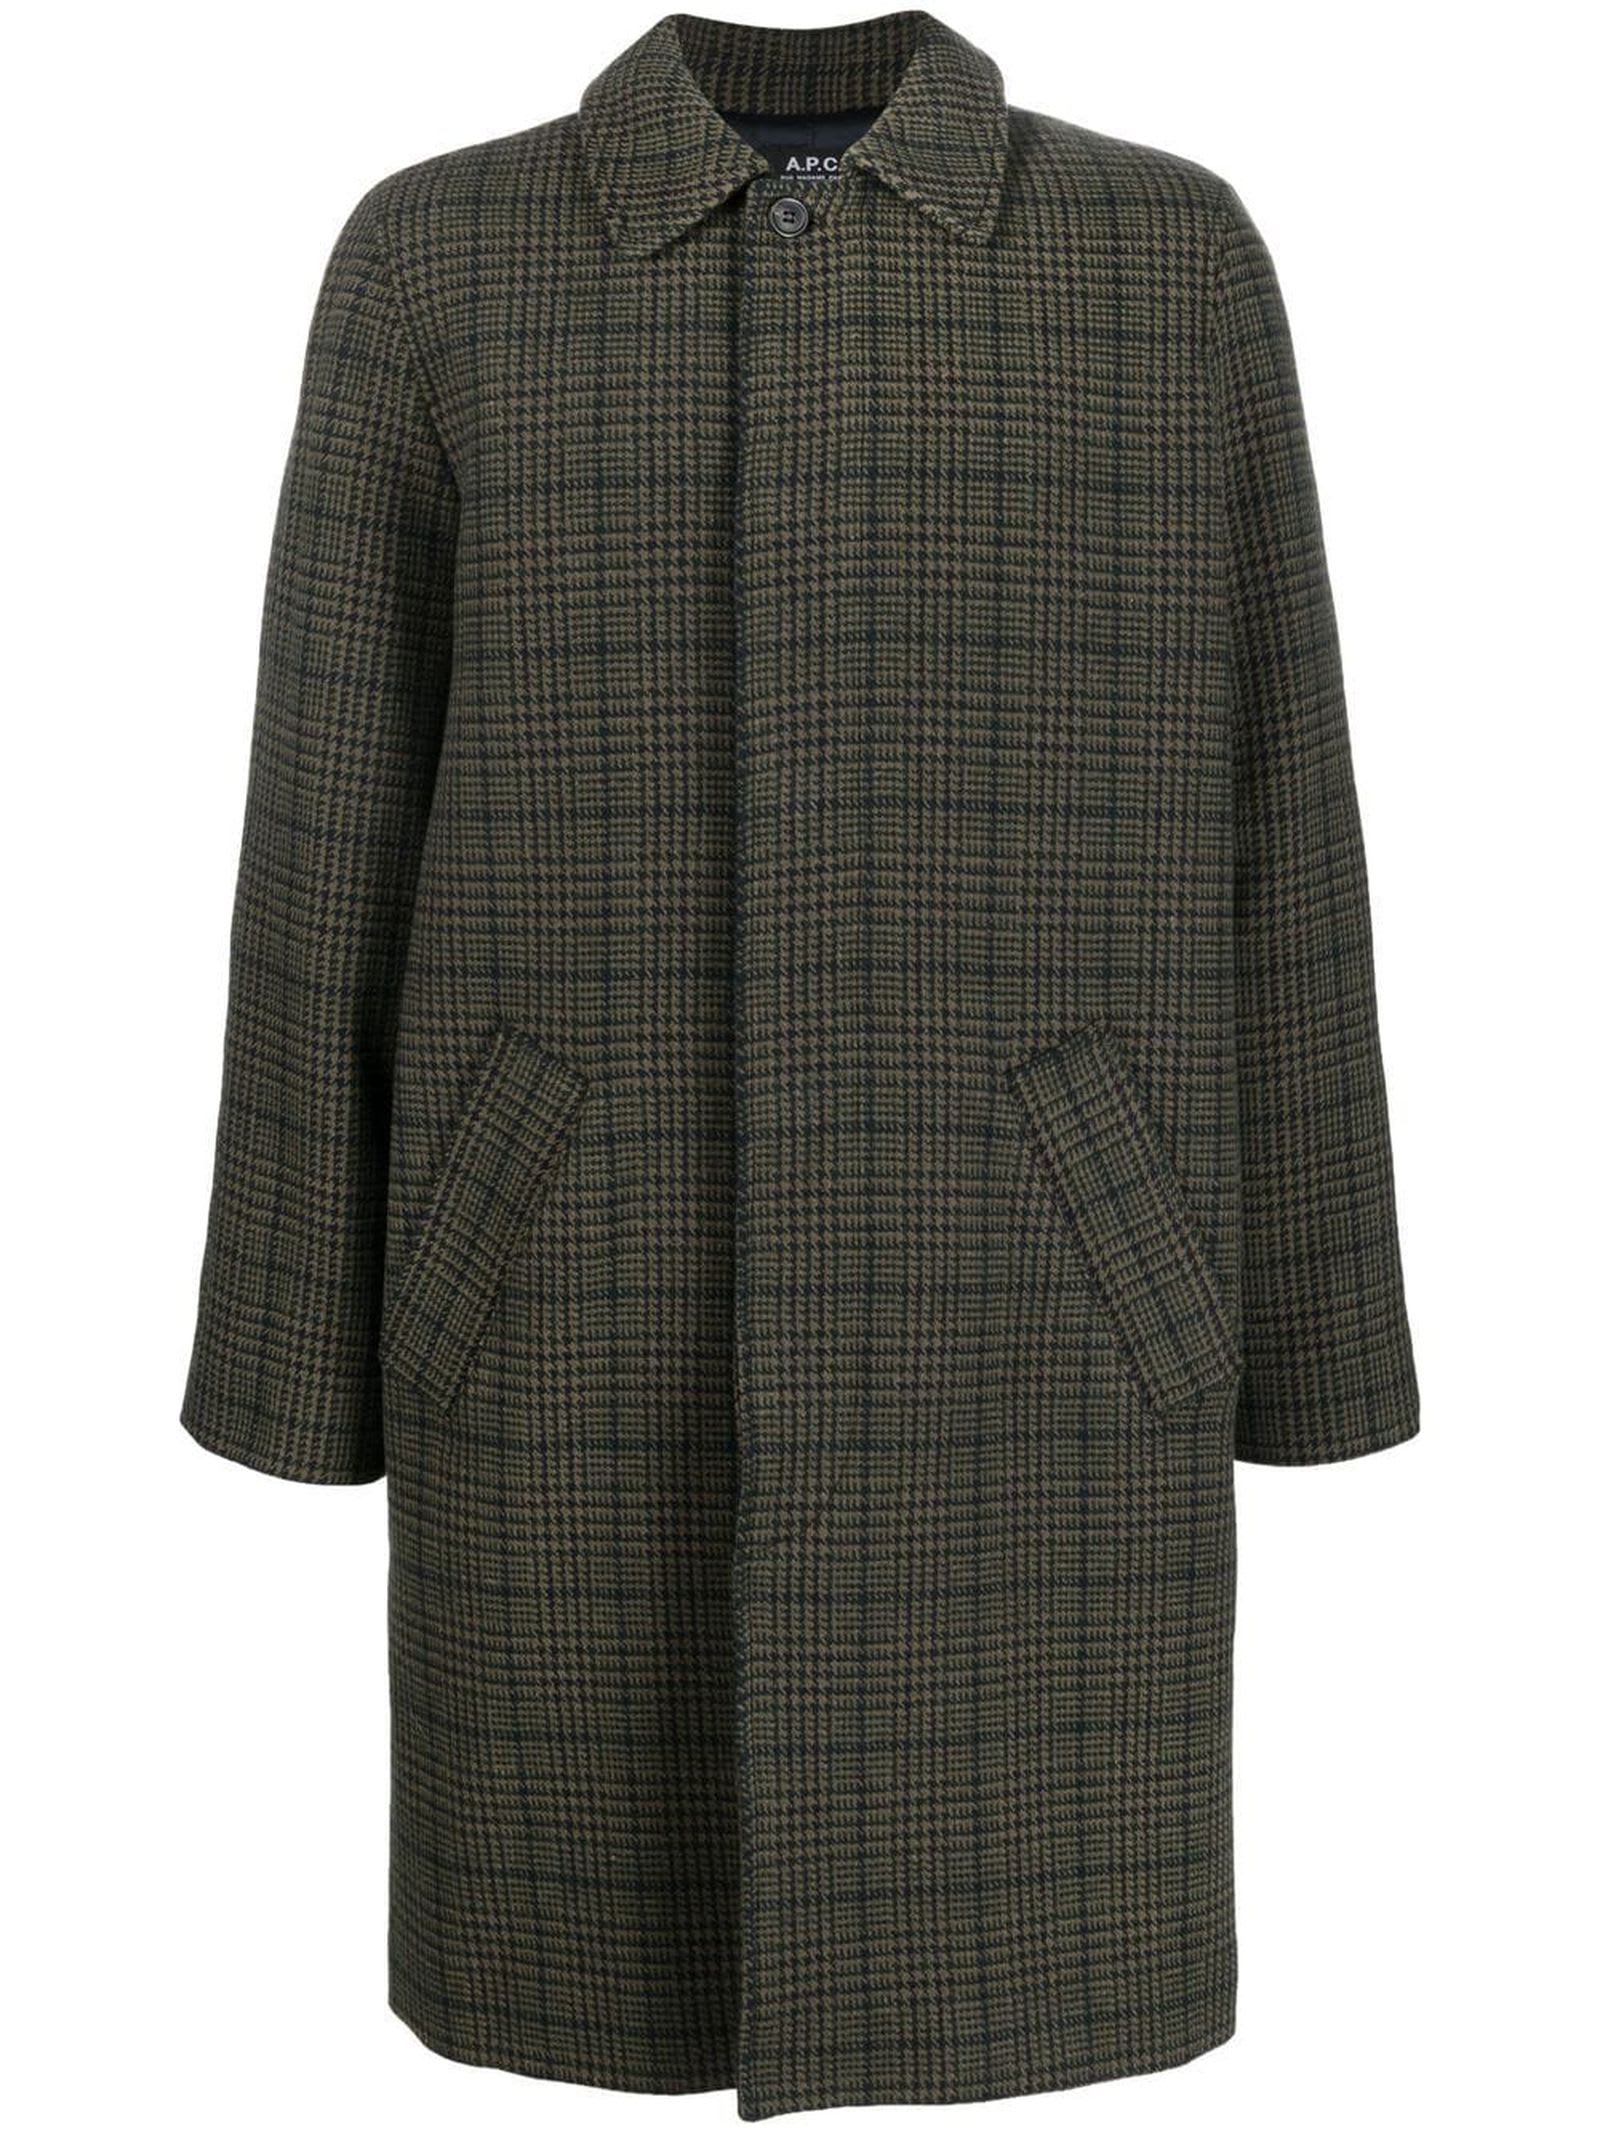 A.P.C. Moss Green Wool Blend Coat